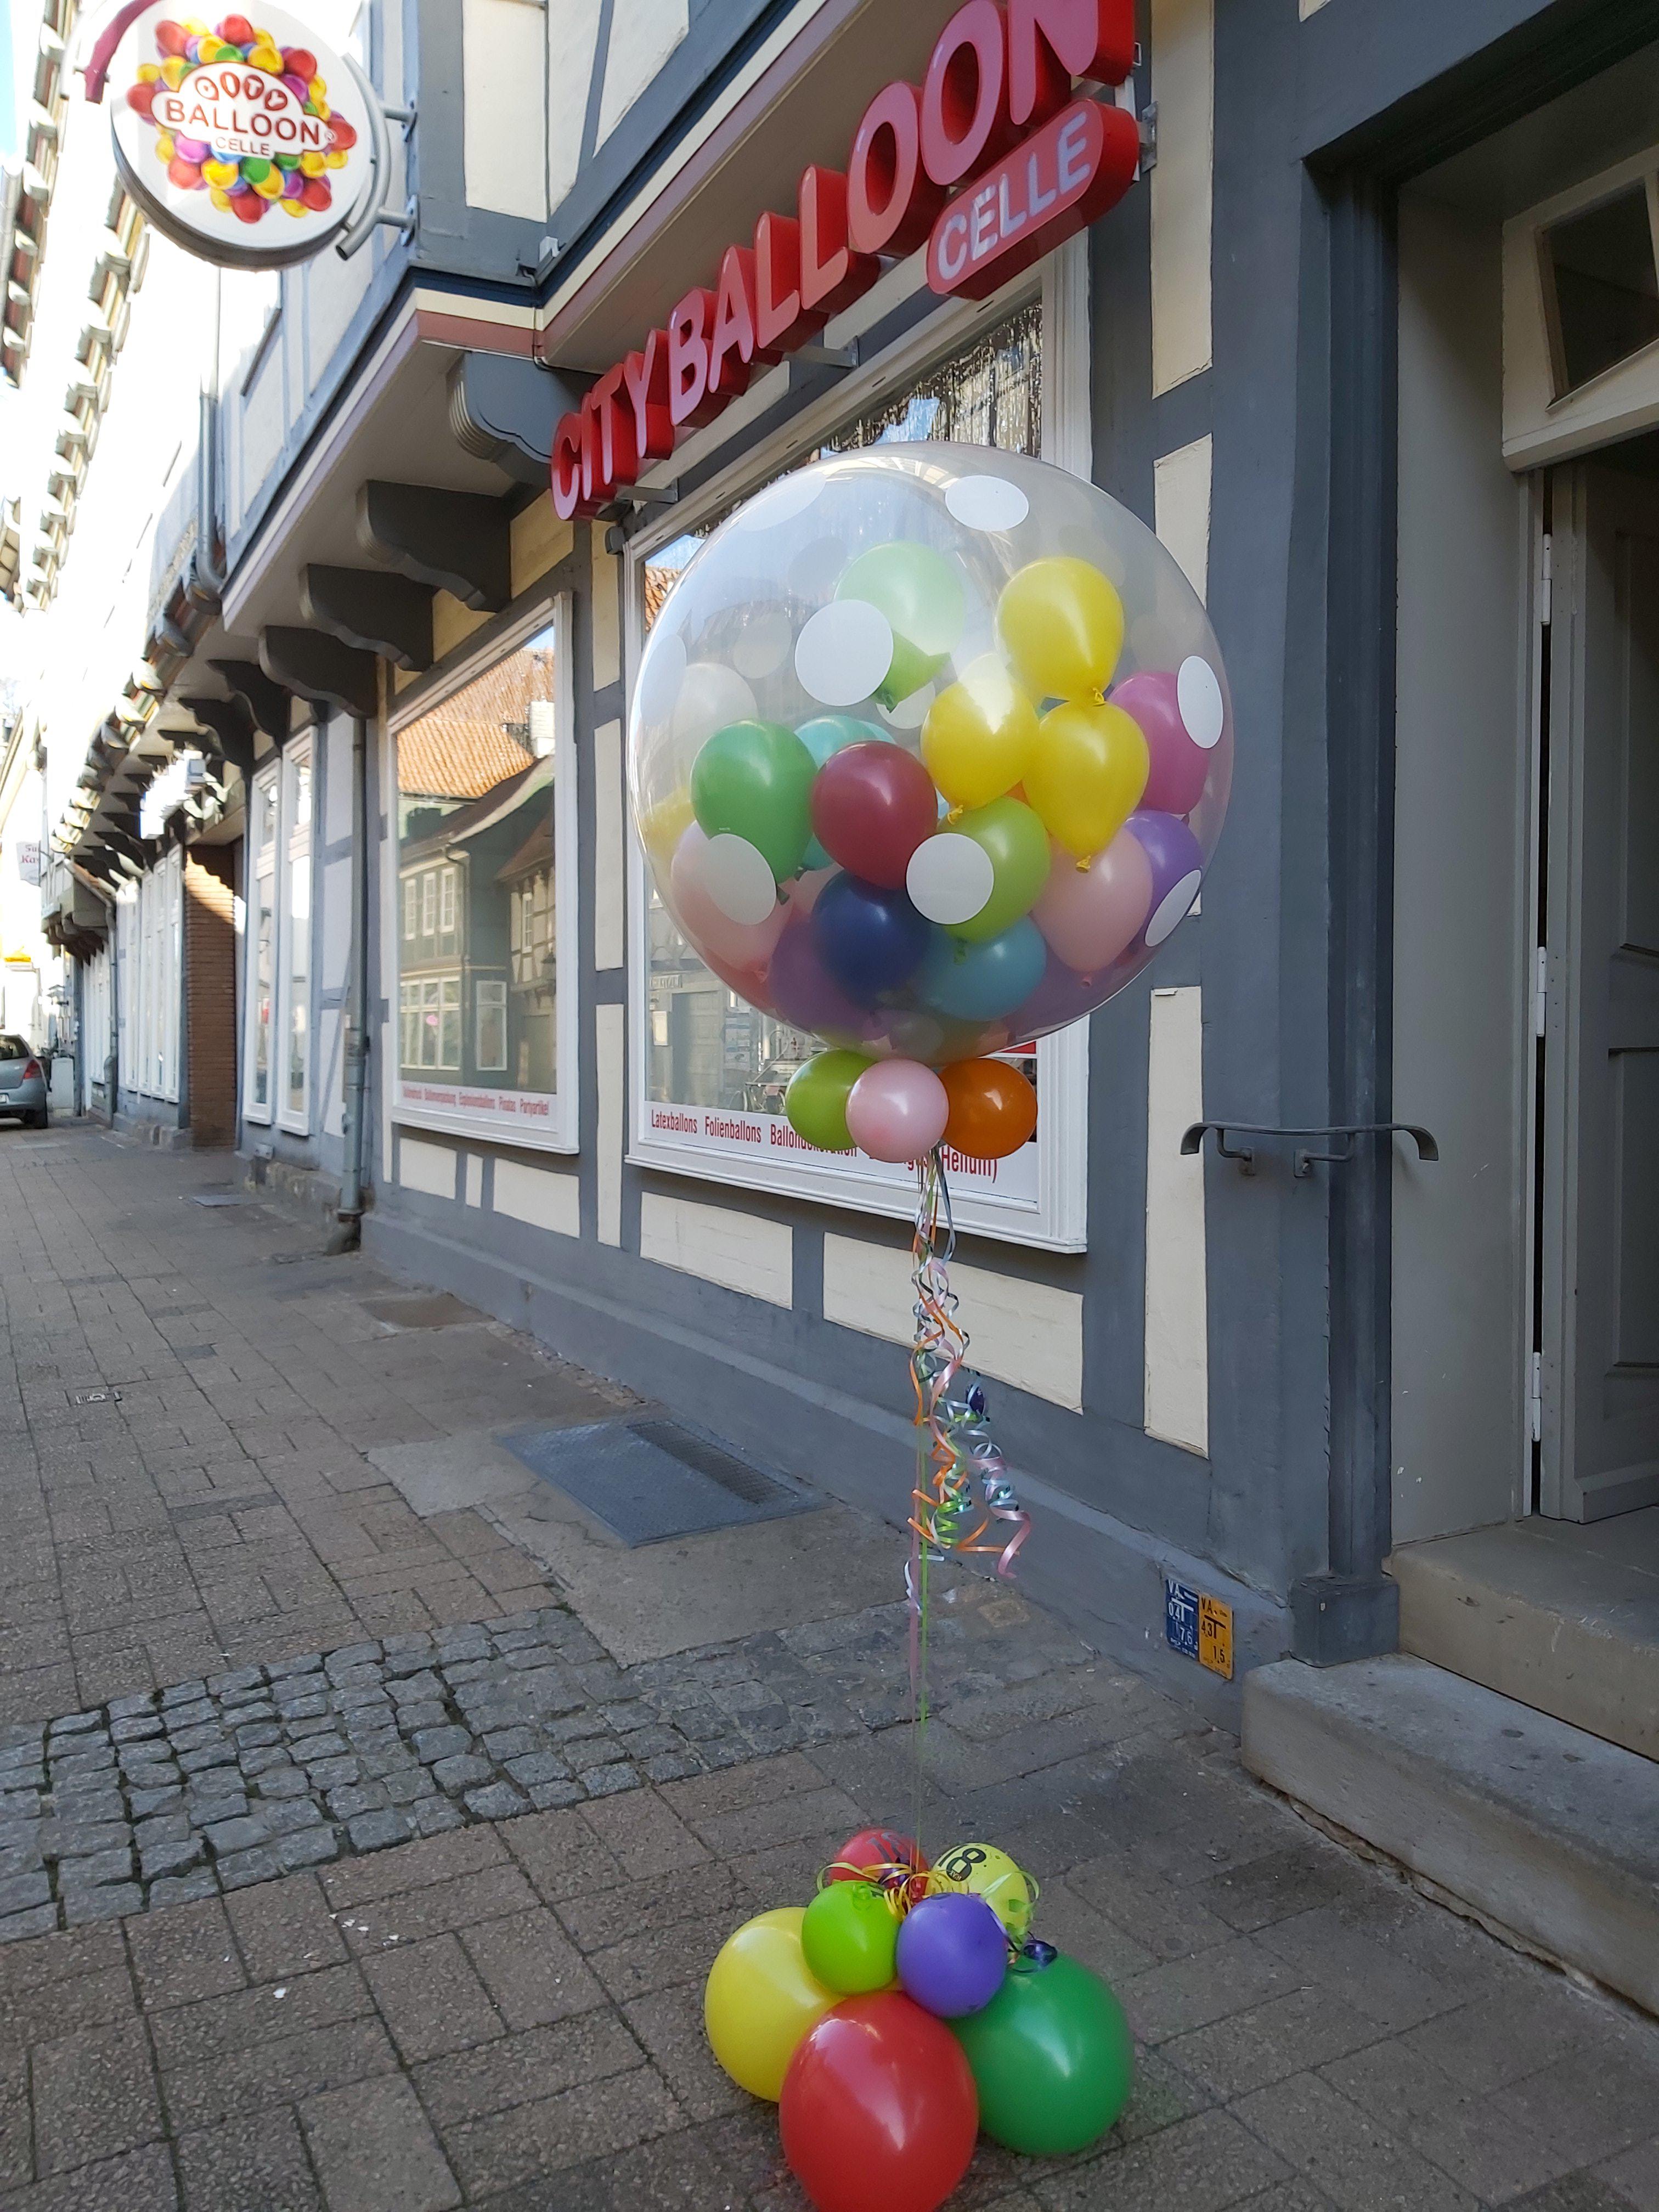 City Balloon Celle, Rundestr. 11 in Celle